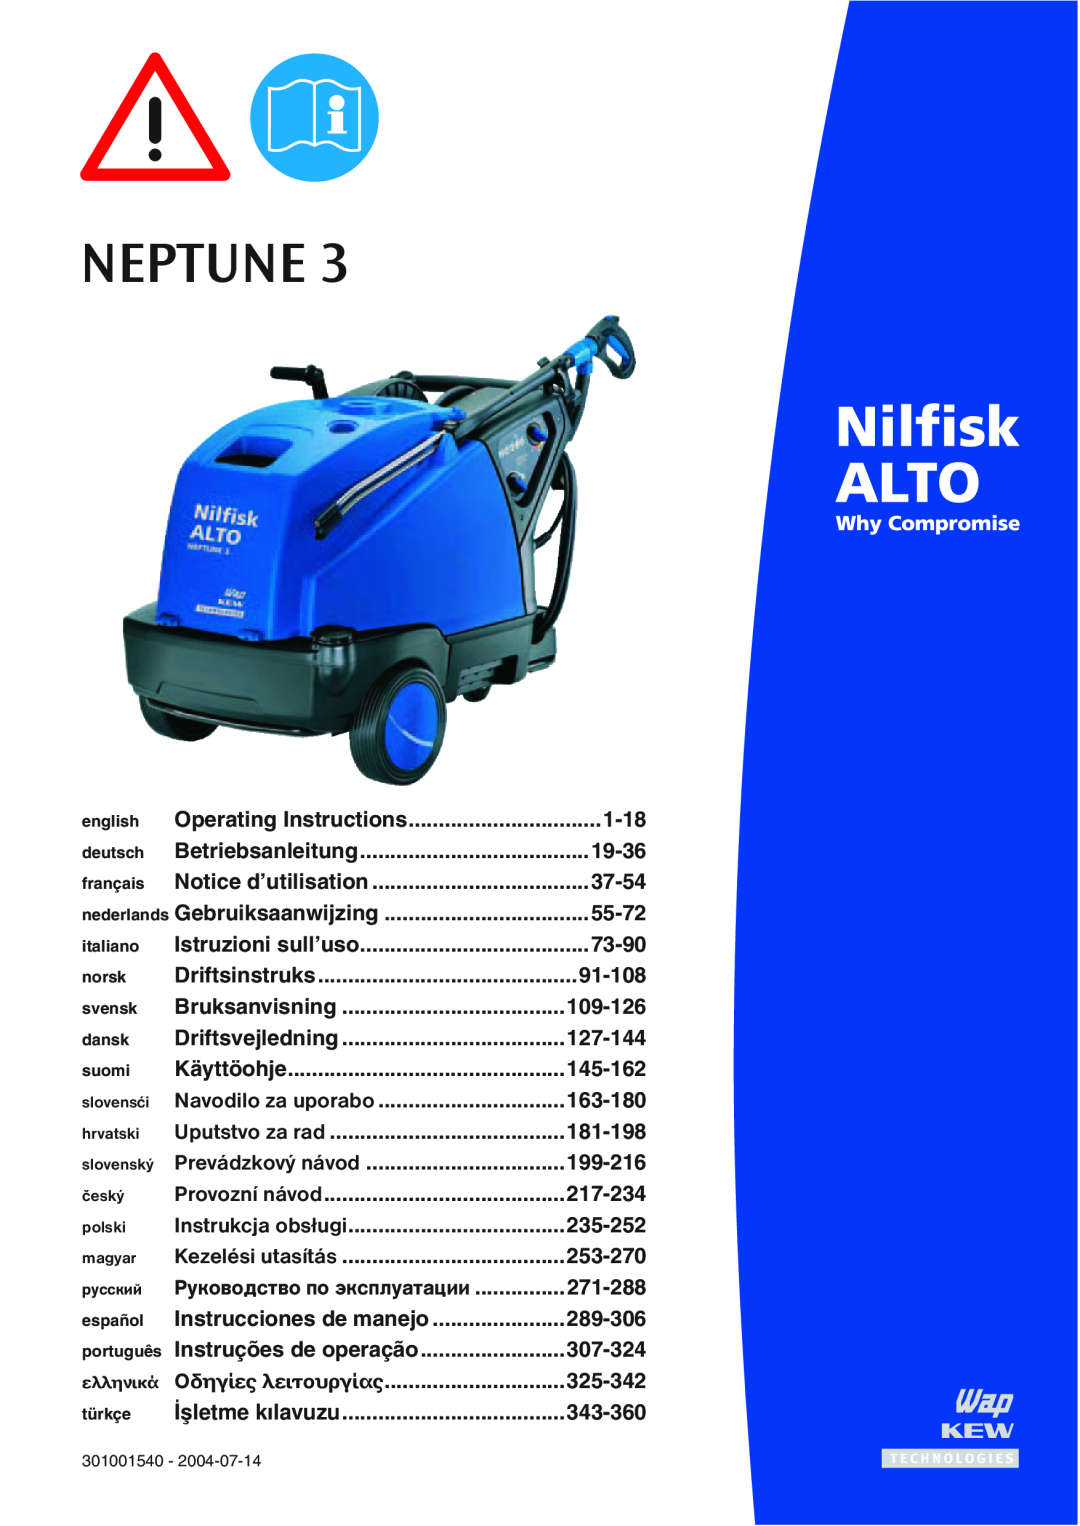 Nilfisk-ALTO NEPTUNE 3 manual 045.%4,  